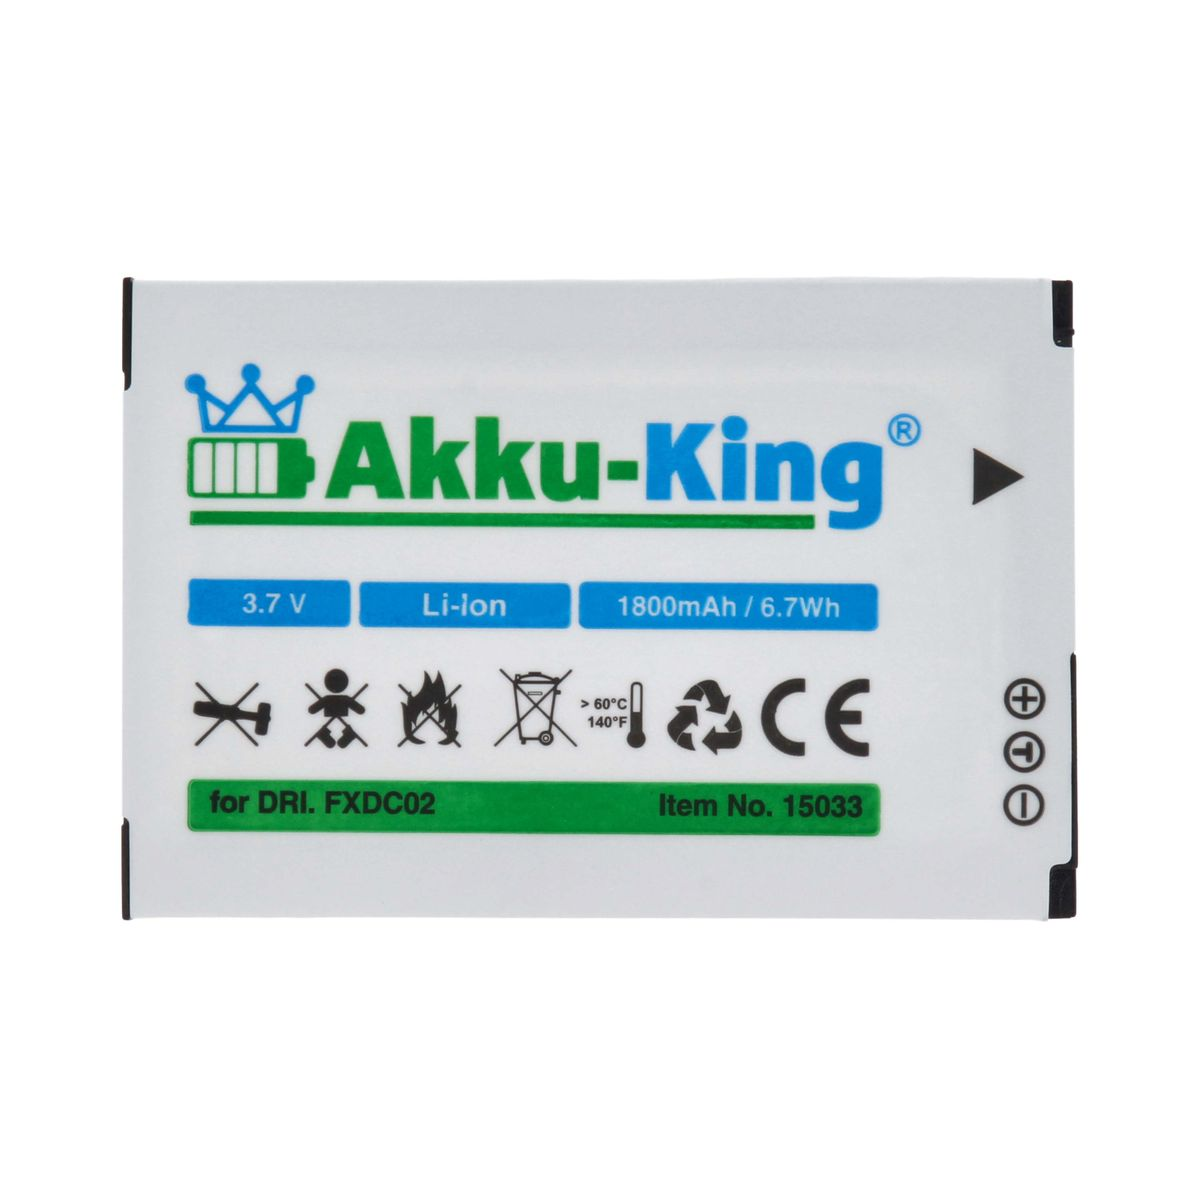 3.7 mit Li-Ion 1800mAh Akku Kamera-Akku, FXDC02 Drift kompatibel Volt, AKKU-KING